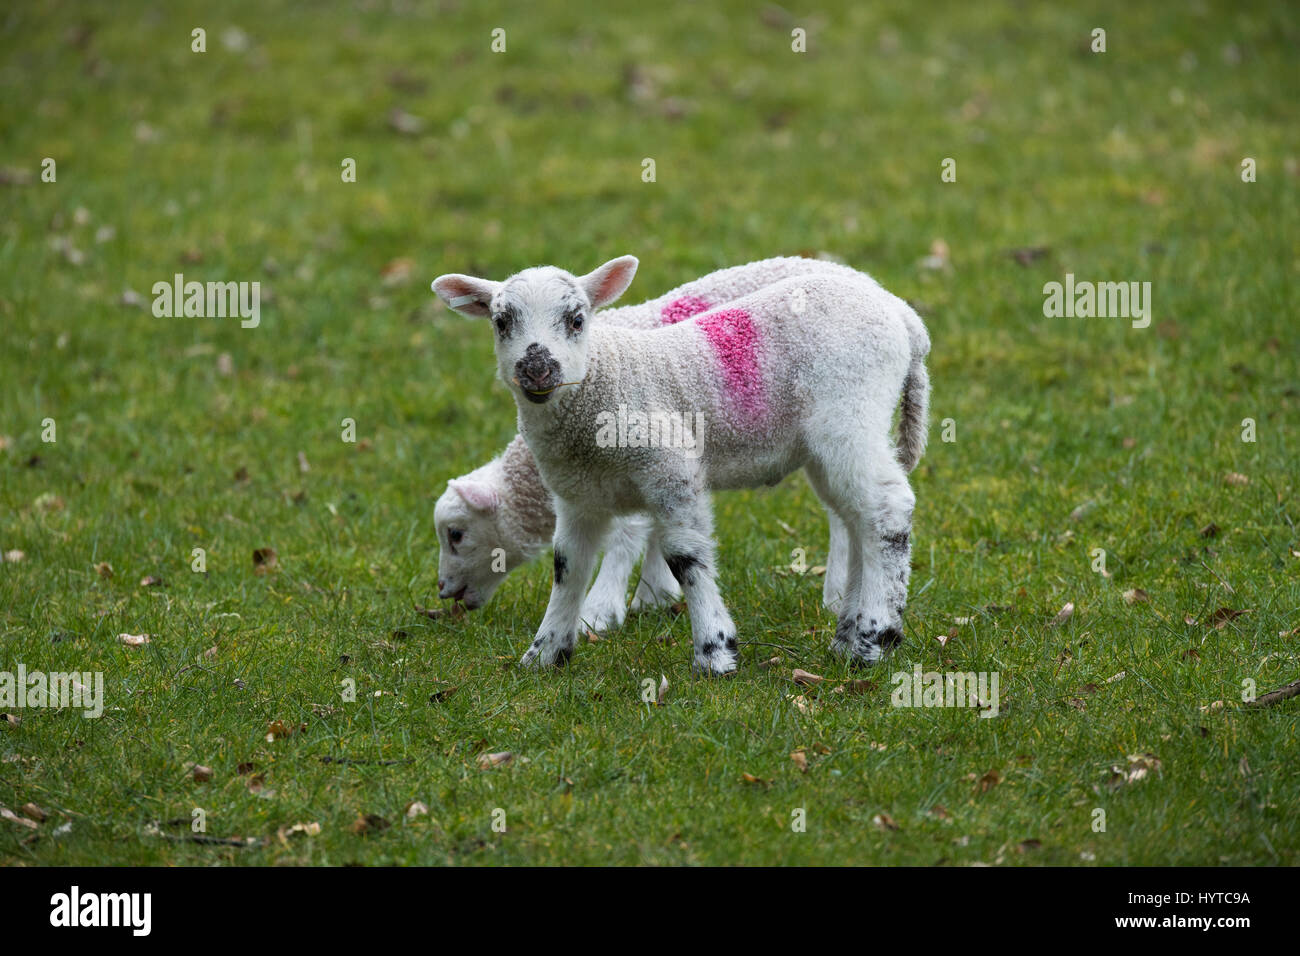 2 cute, adorable, corderos gemelos de pie juntos en una granja campo en primavera. 1 está olfateando una hoja, 1 está mirando a la cámara. Inglaterra, GB, Reino Unido. Foto de stock